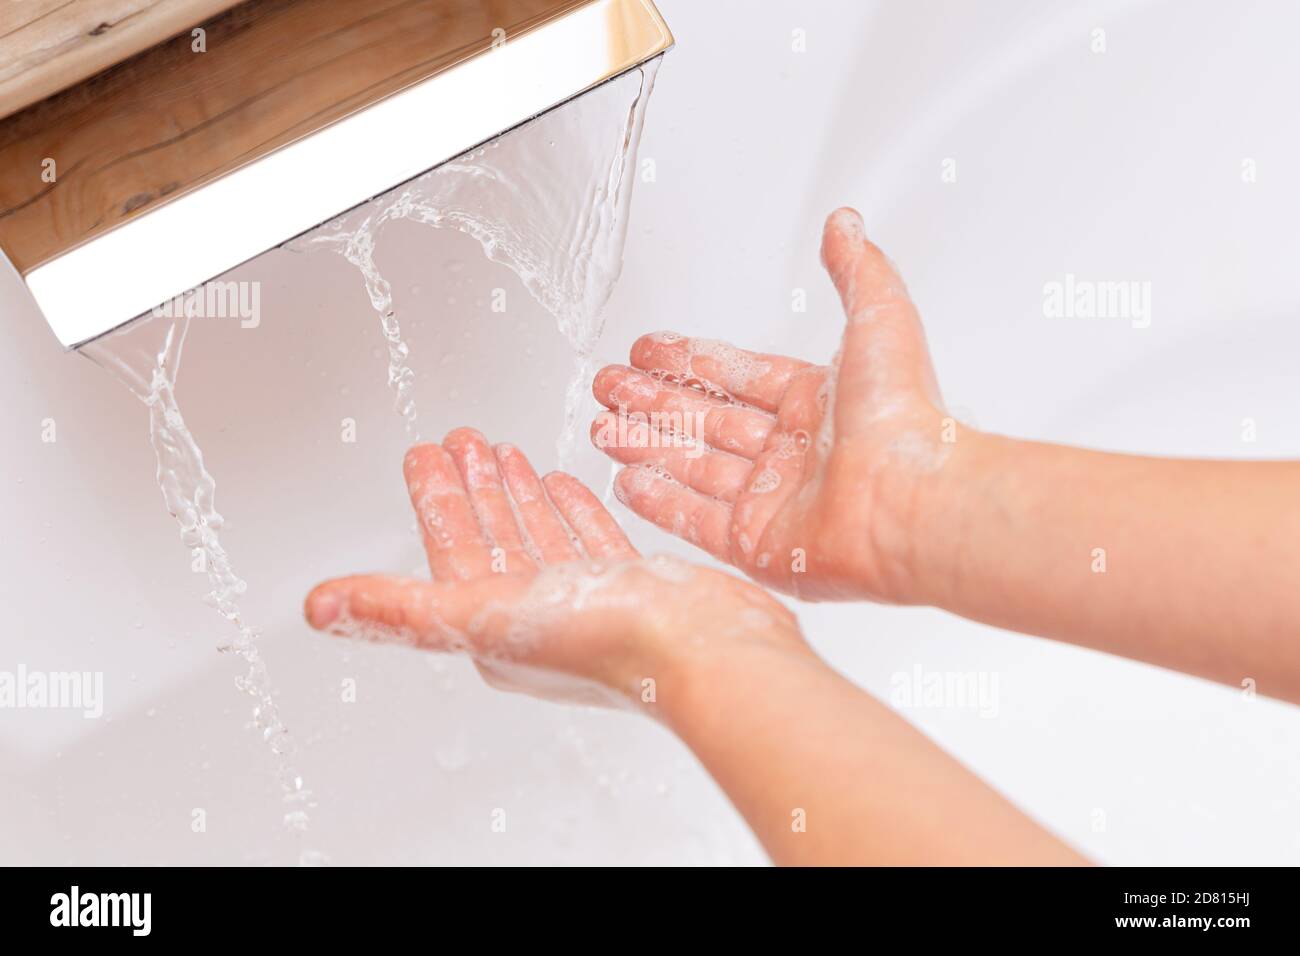 Das Kind wäscht seine Hände mit Seife unter einem Wasserhahn mit sauberem Wasser. Seifige Kid`s Hände Nahaufnahme auf weißem Hintergrund. Hygienekonzept. Krankheitsvermeidungen Stockfoto